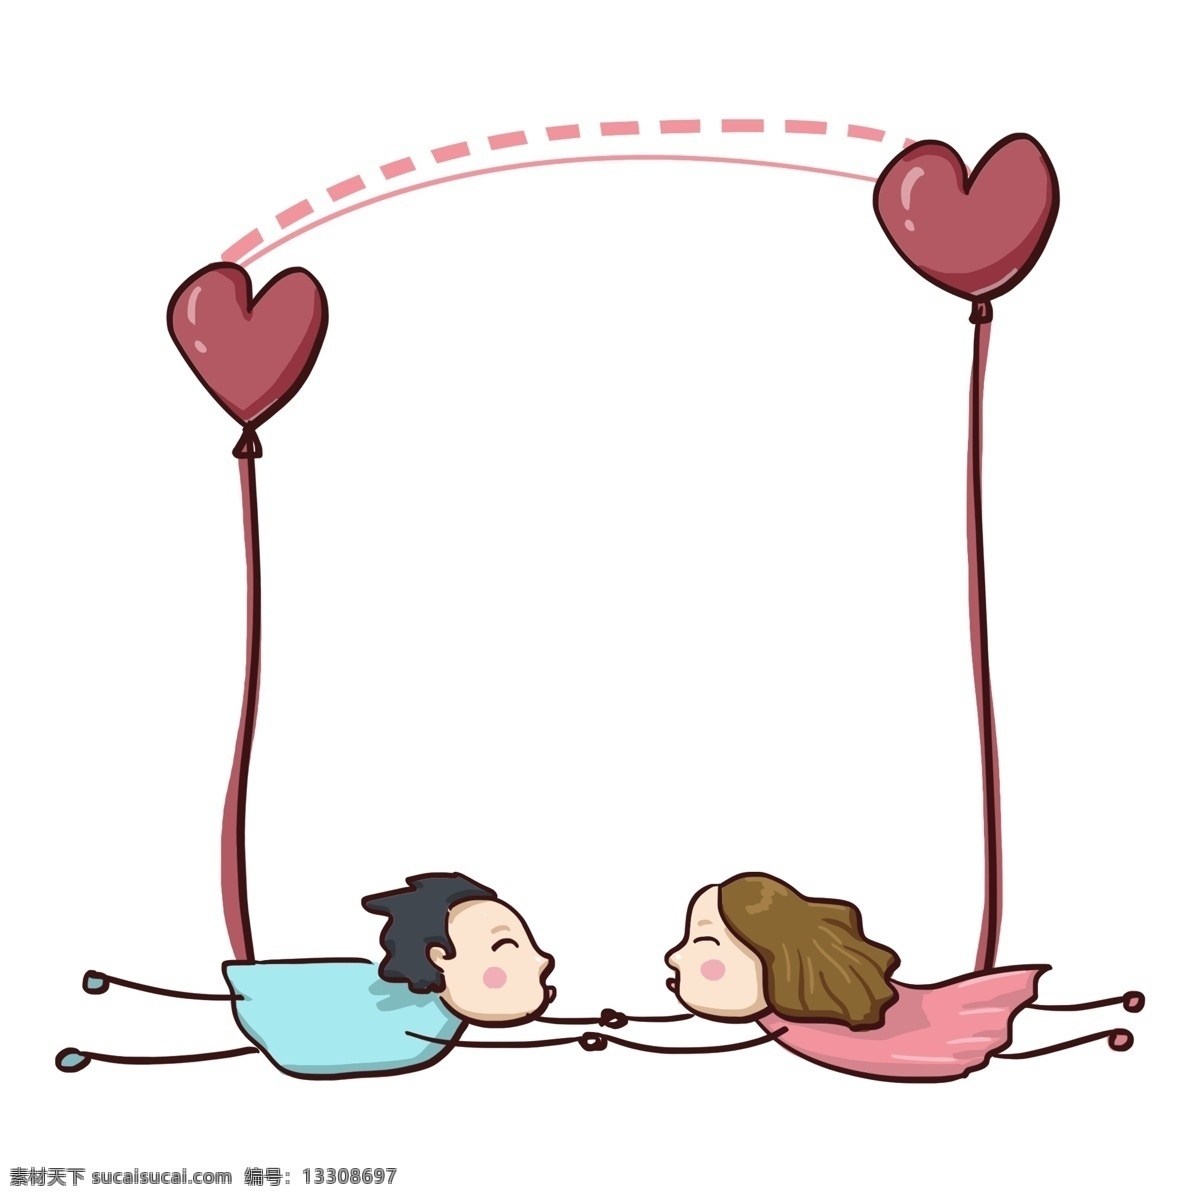 卡通 爱情 情侣 插画 卡通边框 人物边框 情侣边框插画 一对情侣 爱心的两个人 拉手的情侣 情人节边框